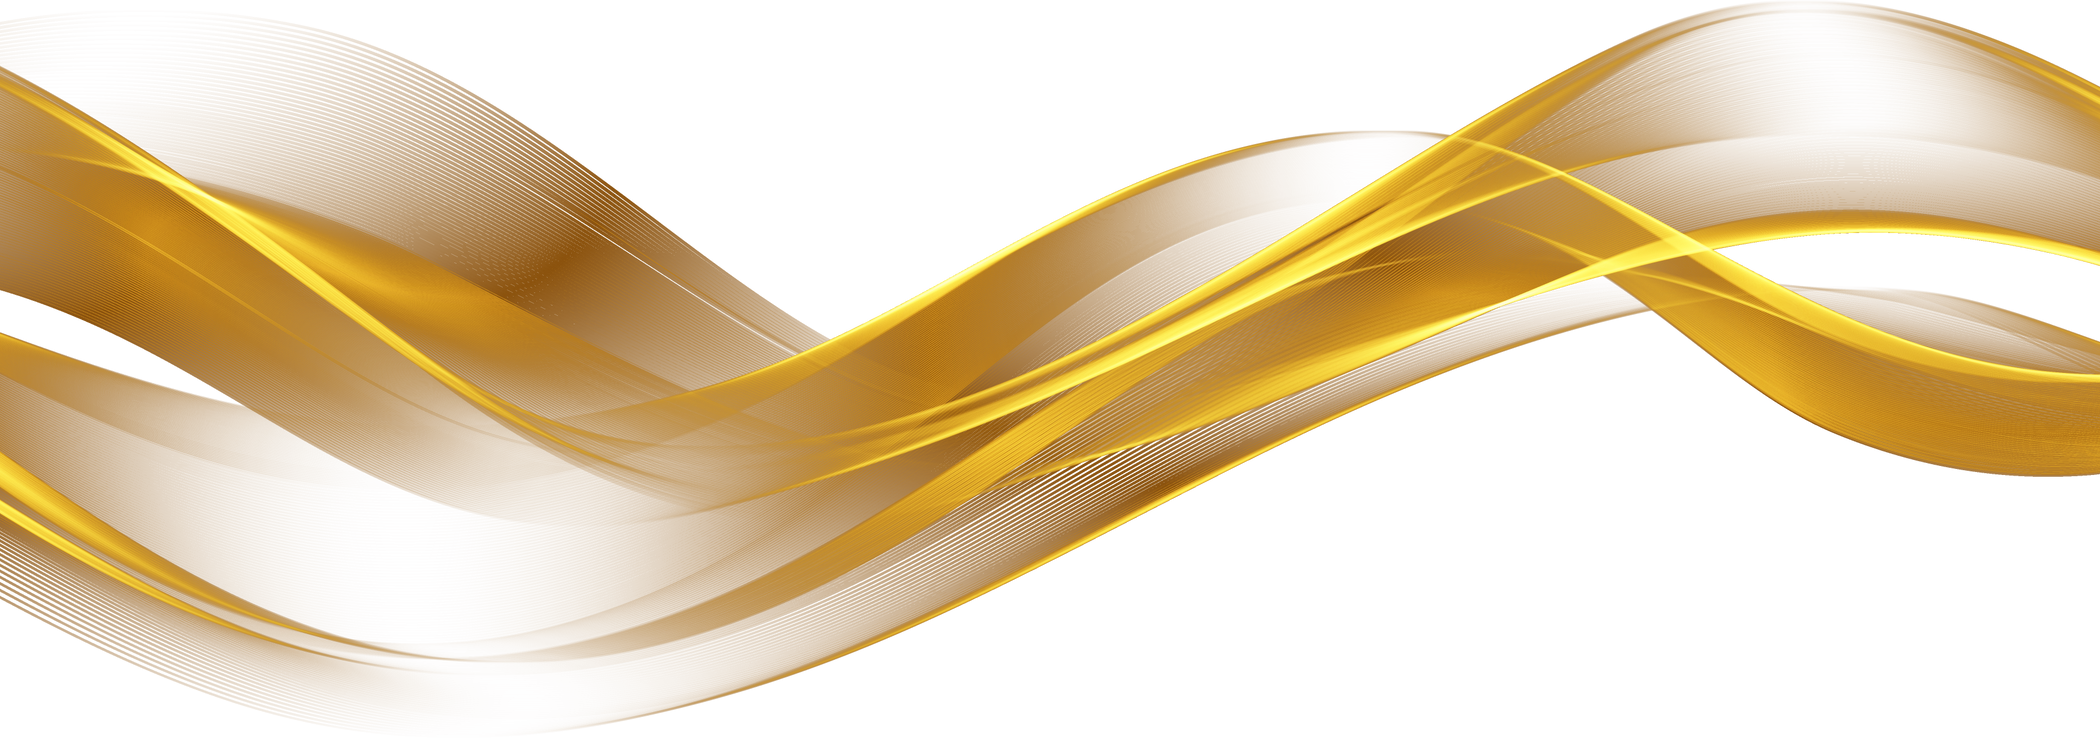 Golden Line Waves